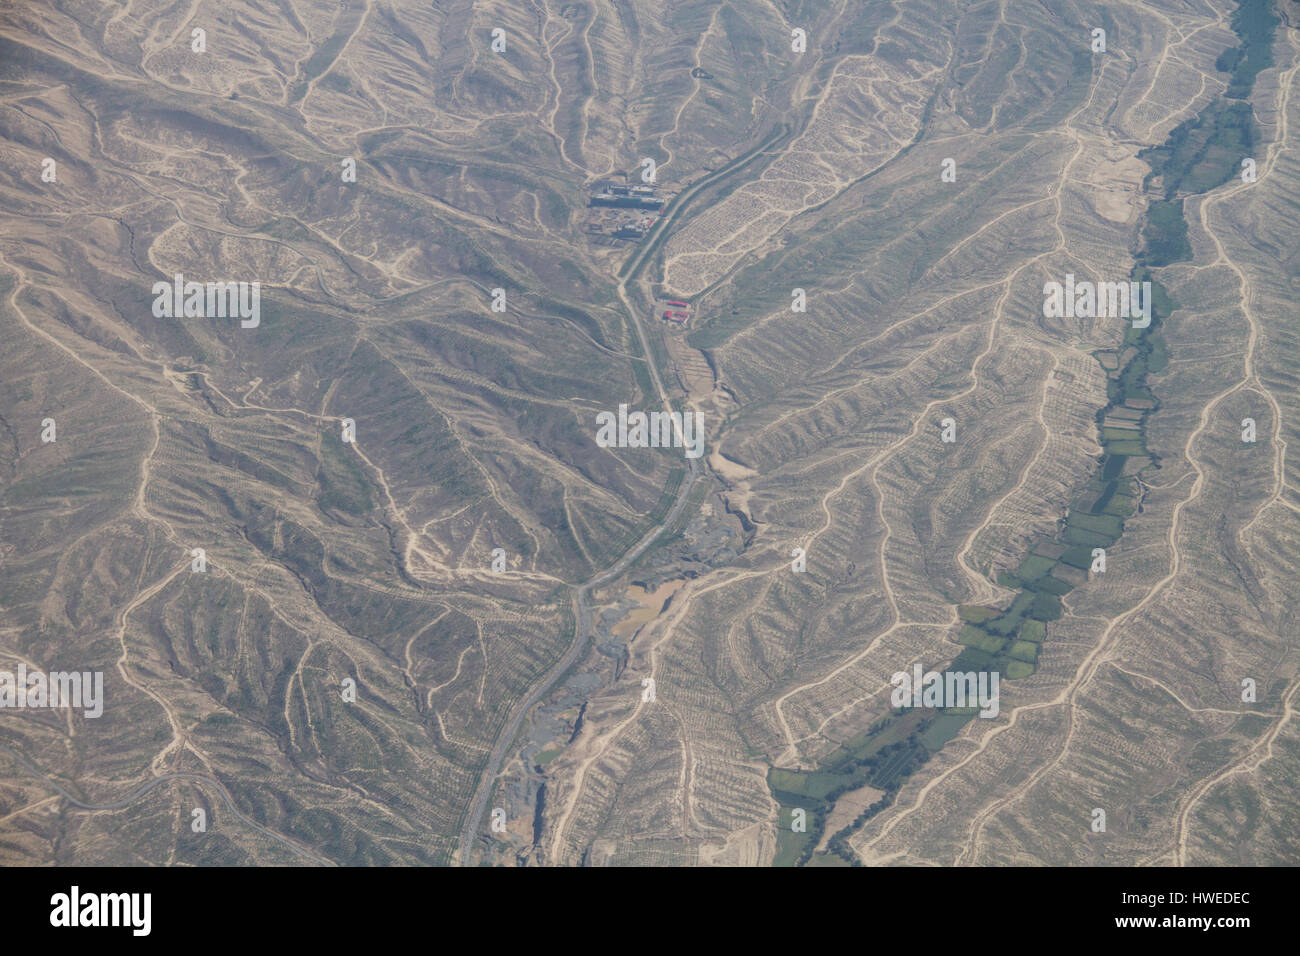 Correa de empuje, Xinjiang, China Foto de stock